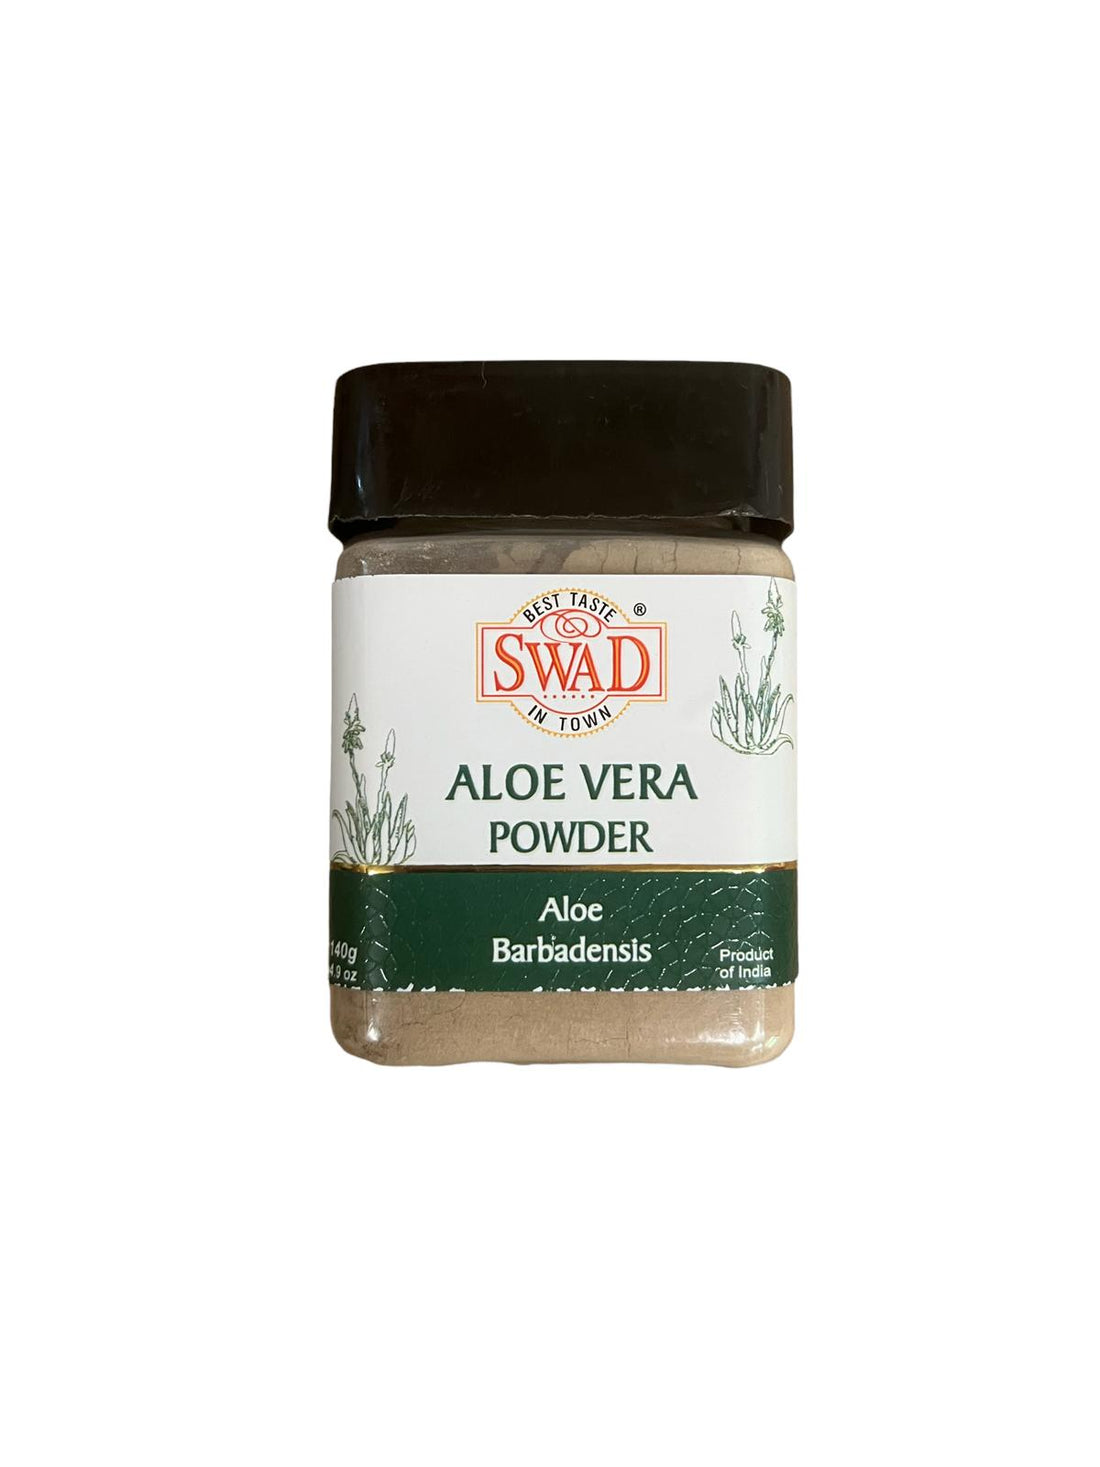 Aloe Vera Powder